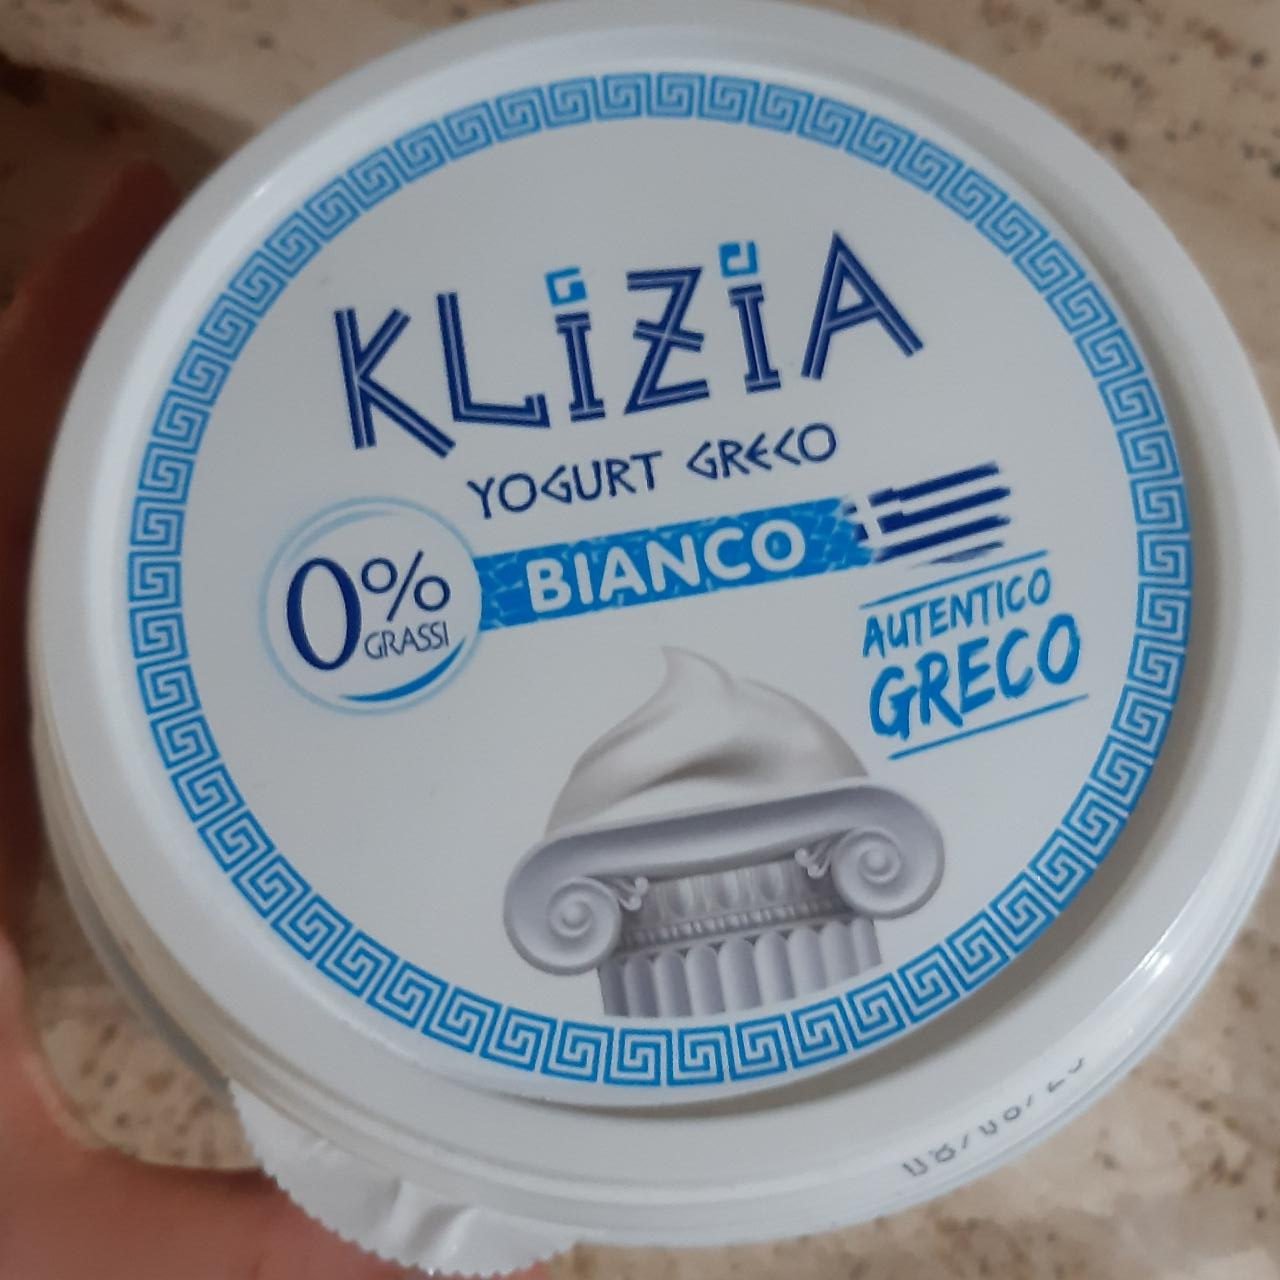 Fotografie - Yogurt greco bianco Klizia